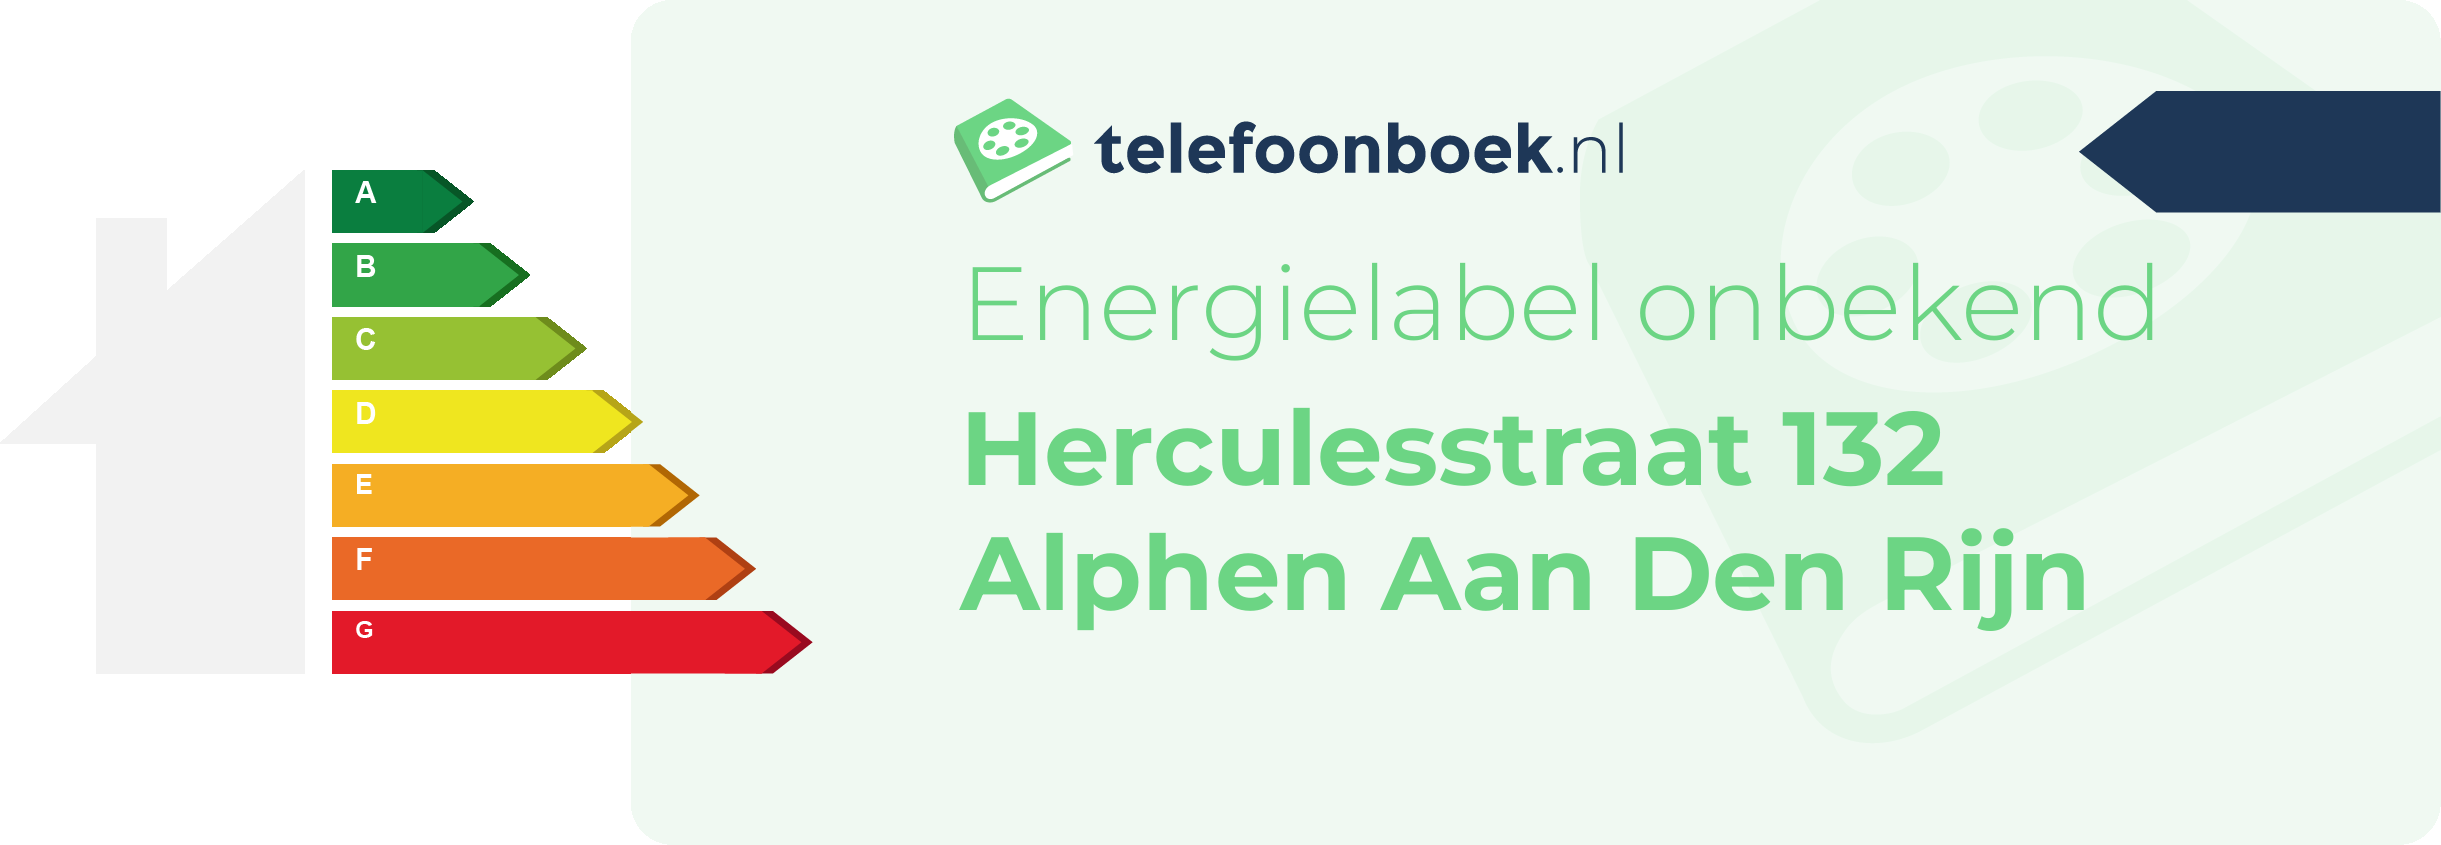 Energielabel Herculesstraat 132 Alphen Aan Den Rijn